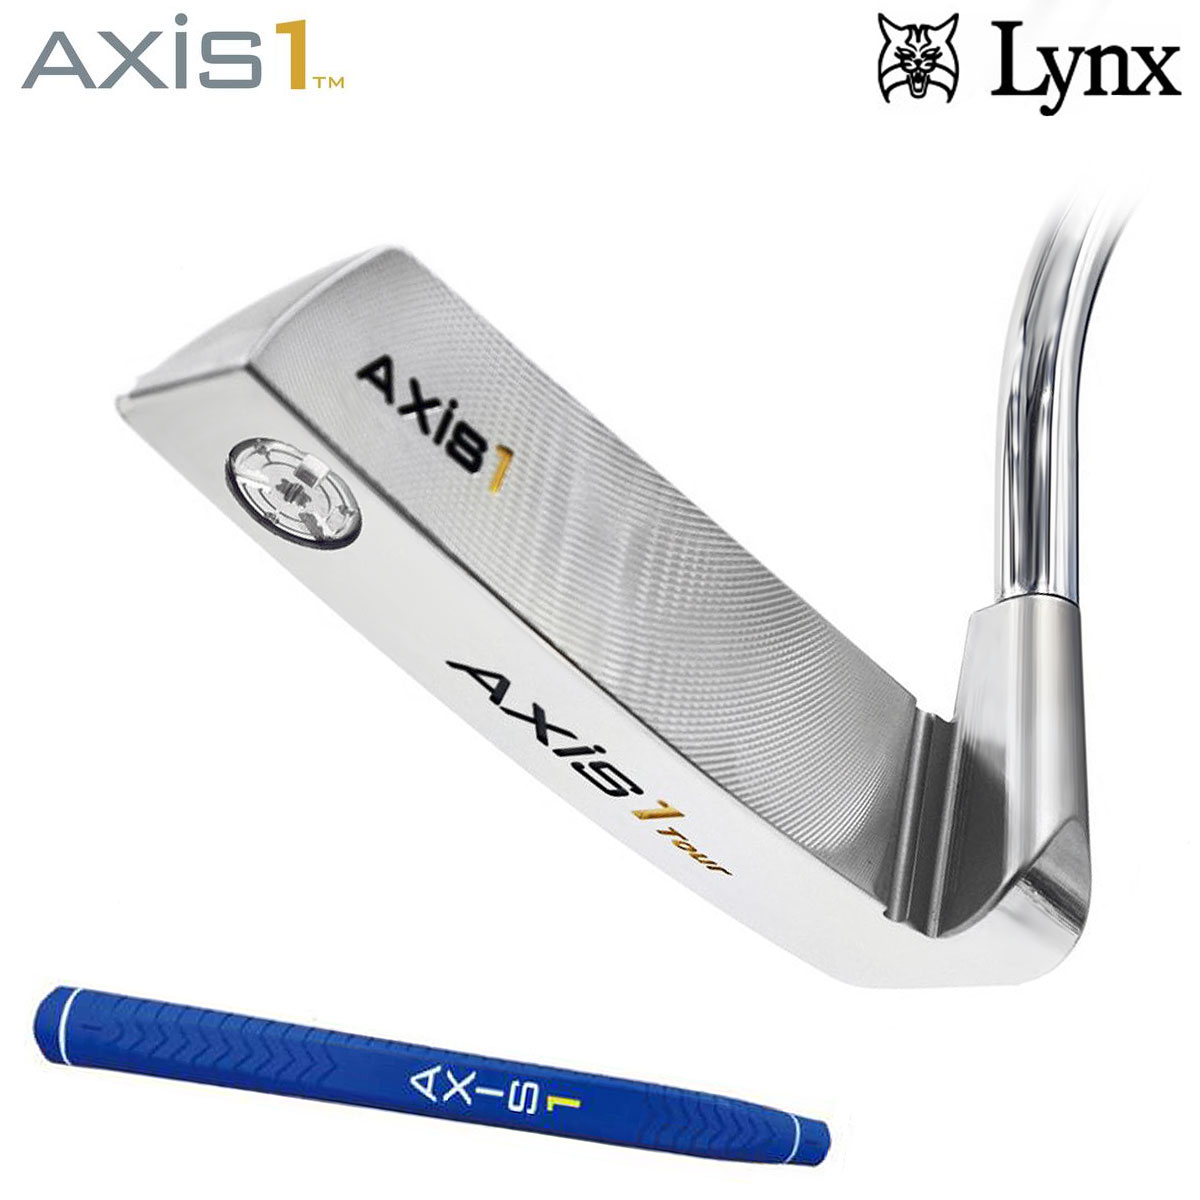 楽天市場】Lynx リンクス正規品 AXIS1(アクシスワン)パター Tour-S